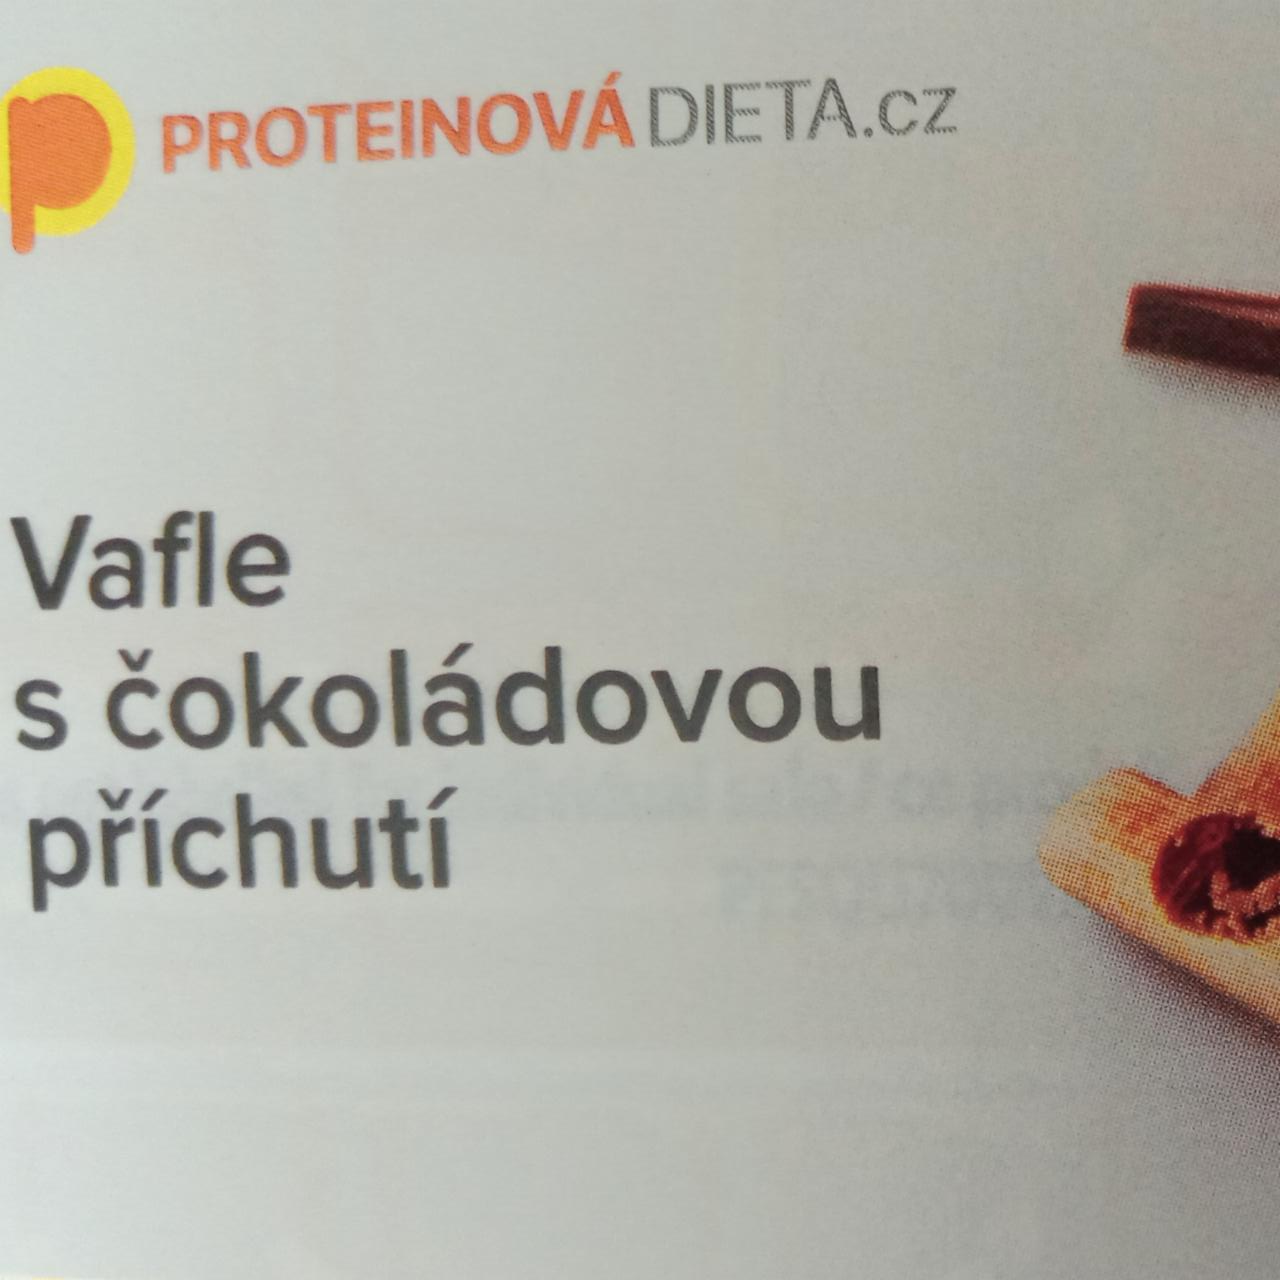 Fotografie - Vafle s čokoládovou příchutí ProteinováDieta.cz